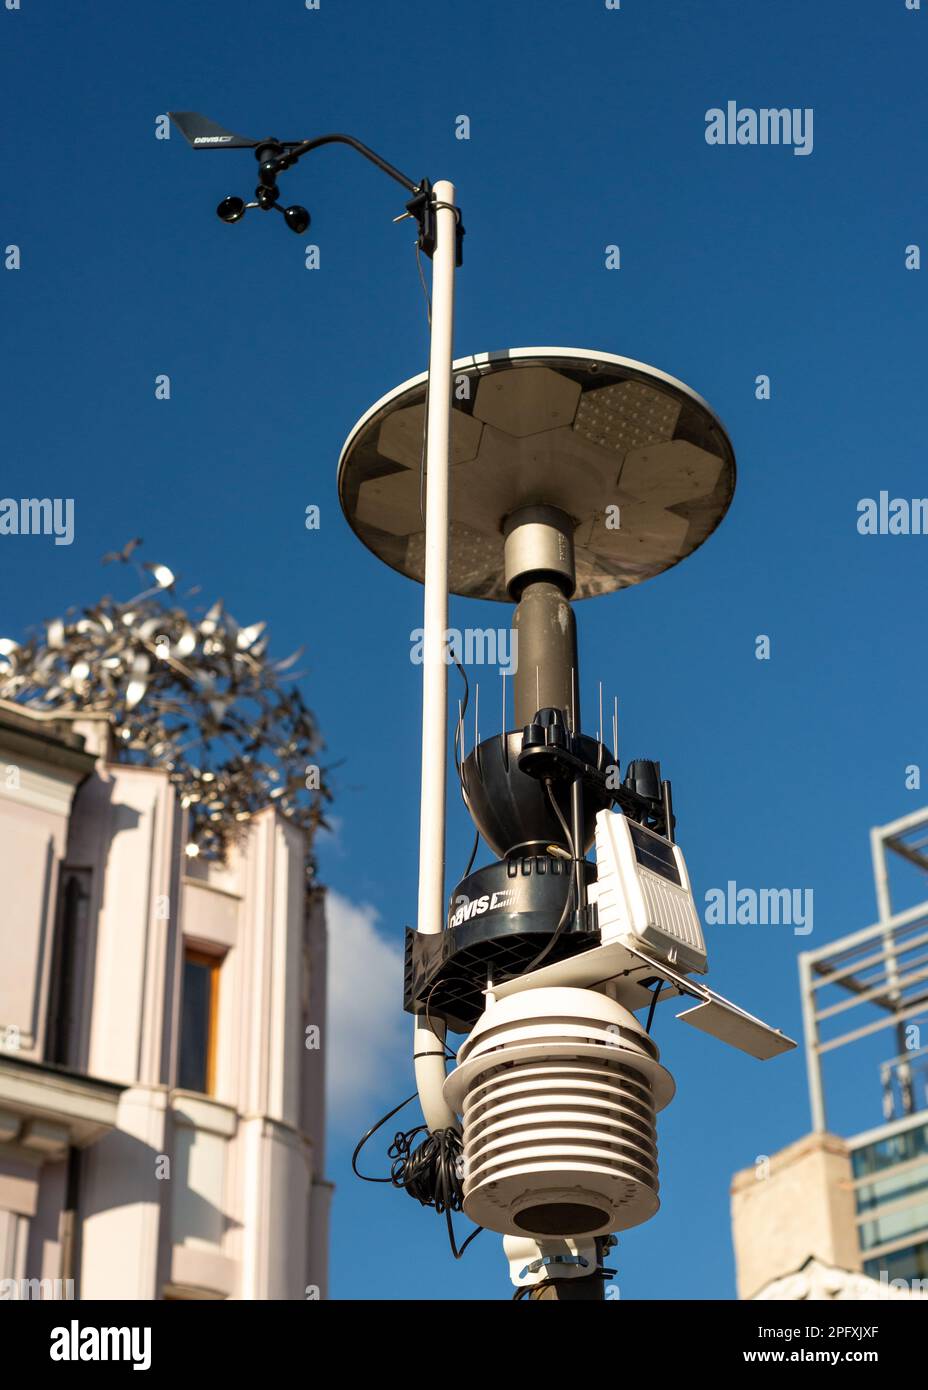 Wireless Vantage Pro2 ISS Davis Luftqualitätsüberwachungssystem Wetterstation in der Innenstadt von Sofia, Bulgarien, Osteuropa, Balkan, EU Stockfoto